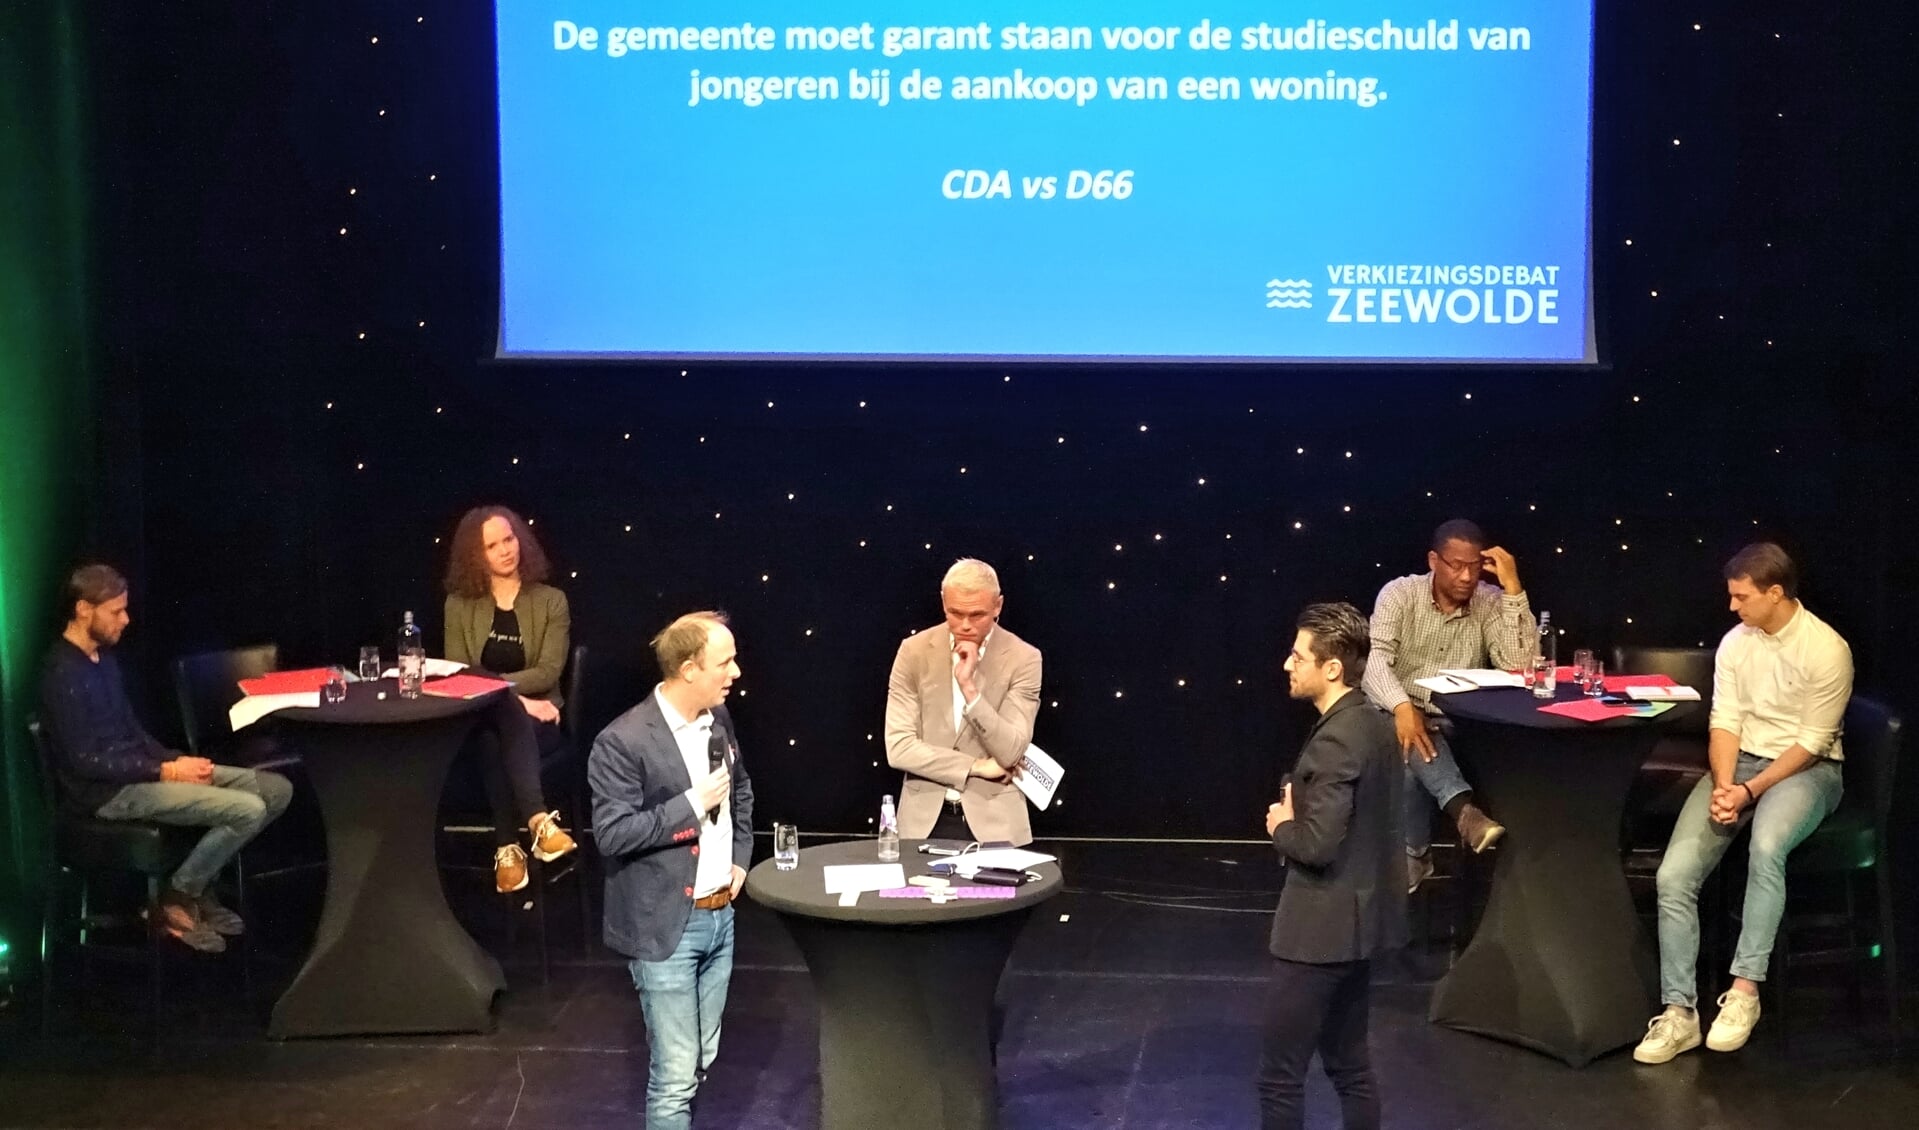 Egge Jan de Jonge (CDA) in debat met Sam Sterk (D66) over studieschuld